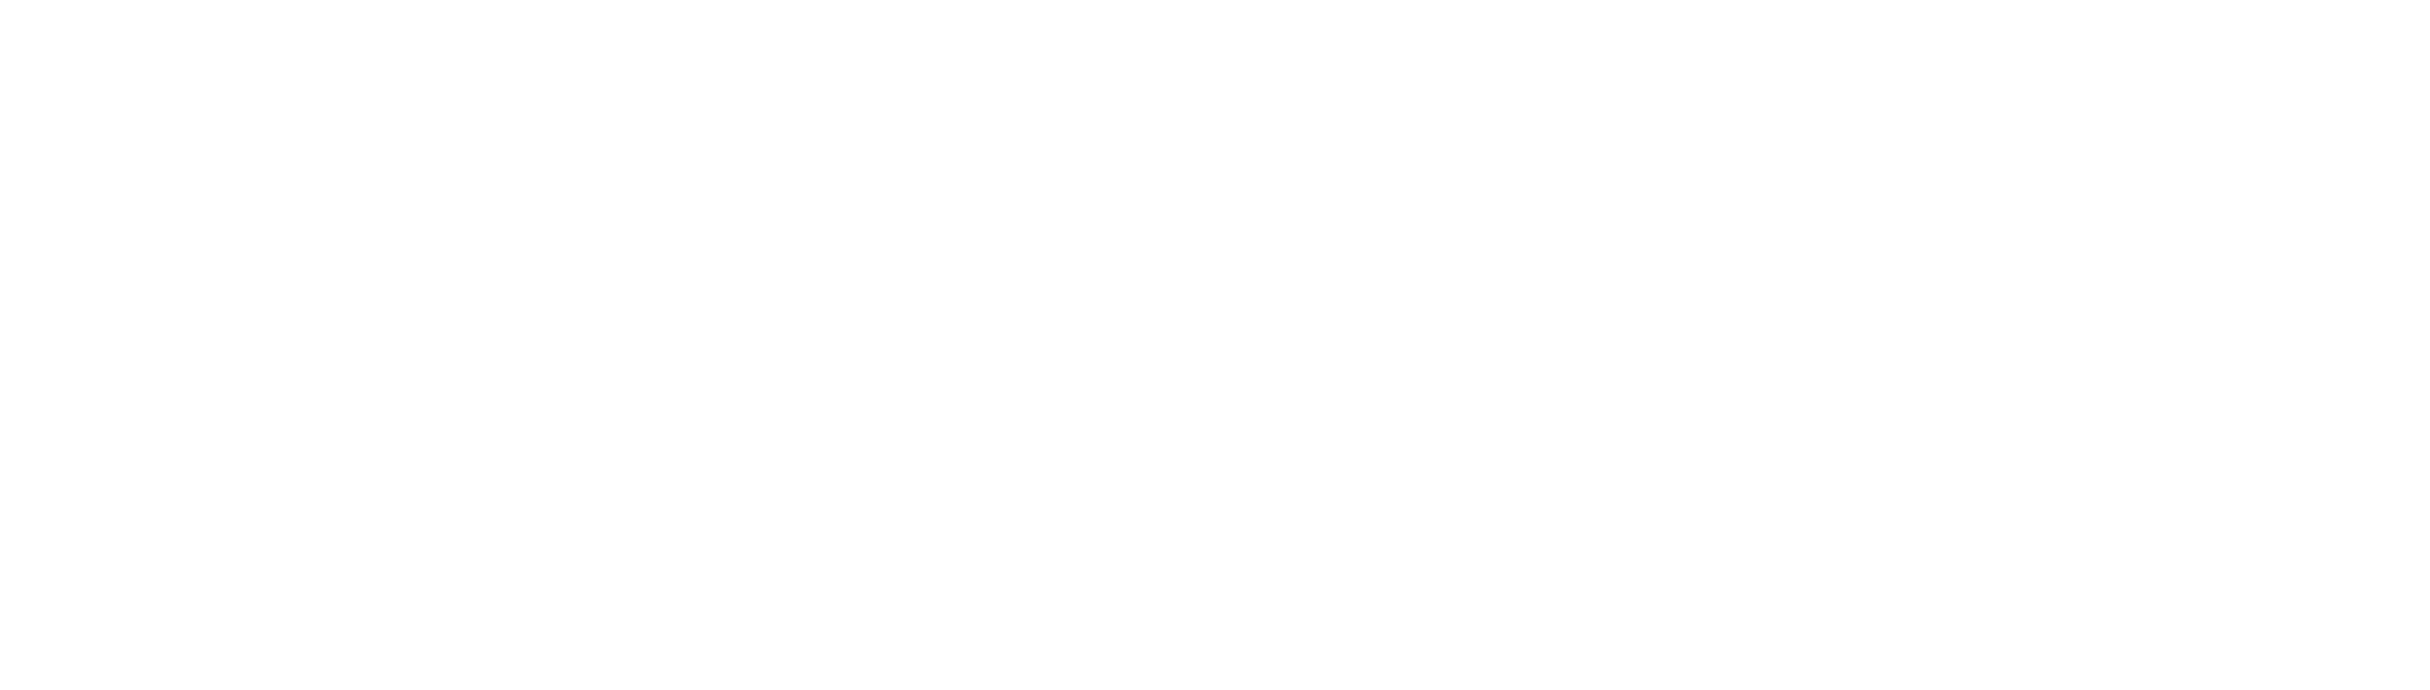 Goal Sport Software Timeline